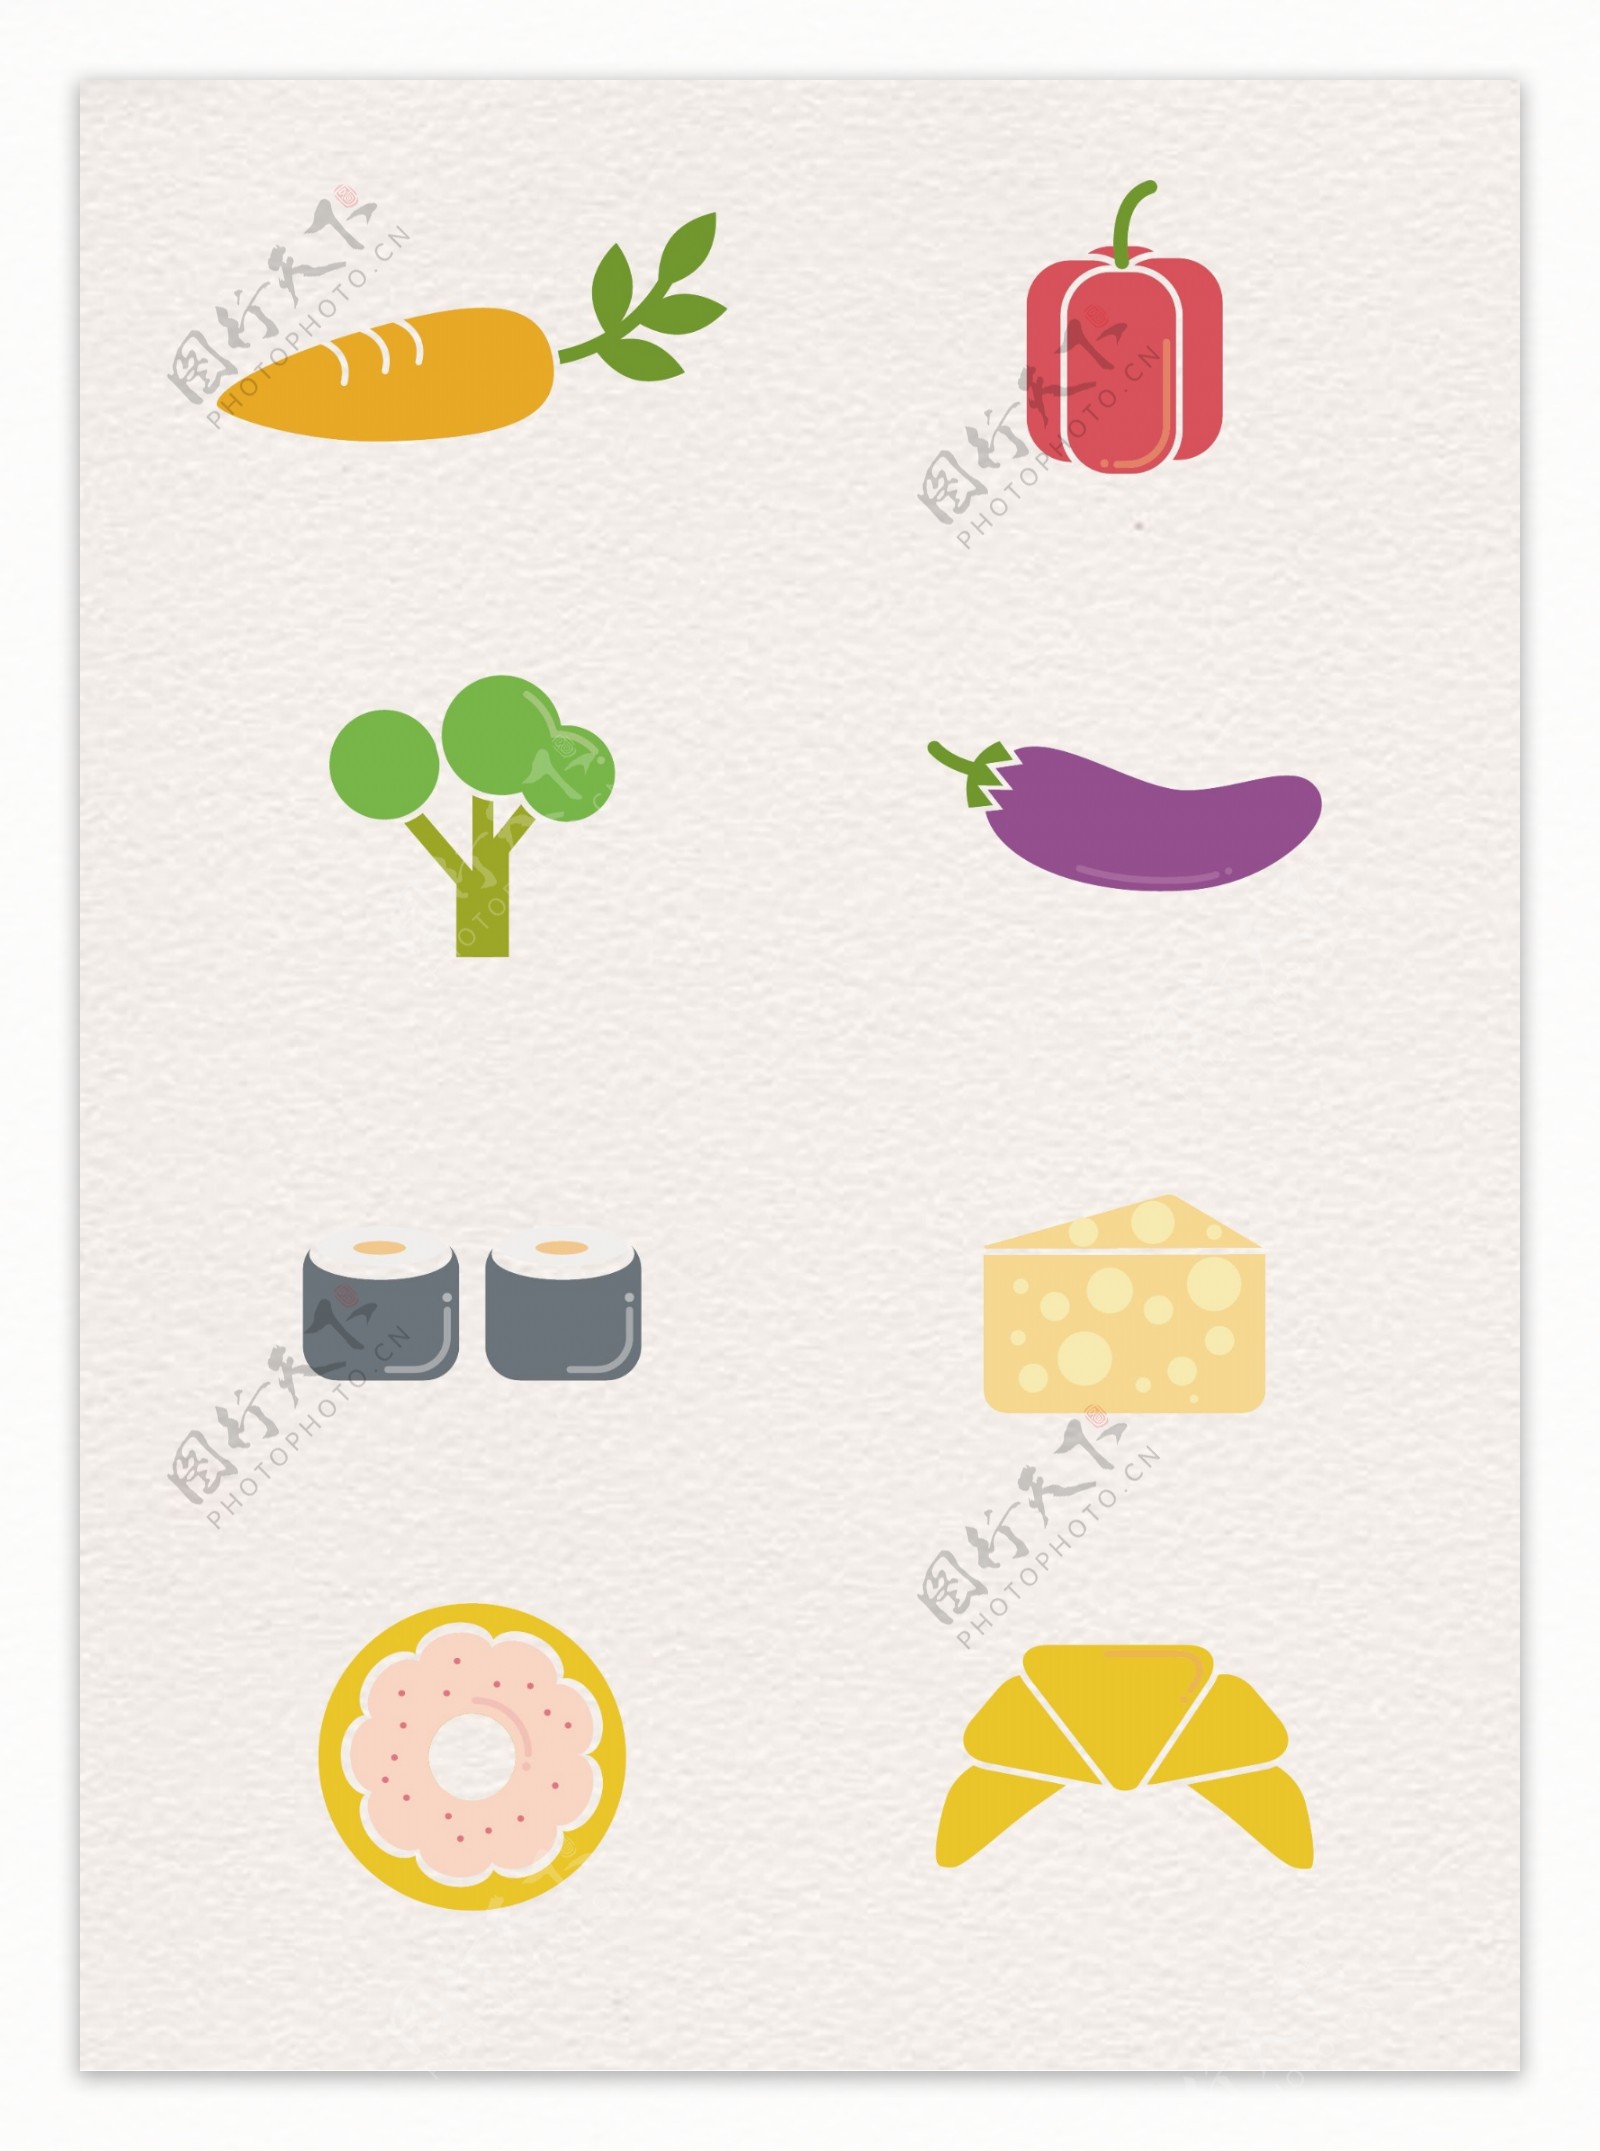 扁平化彩色蔬果食物图标设计